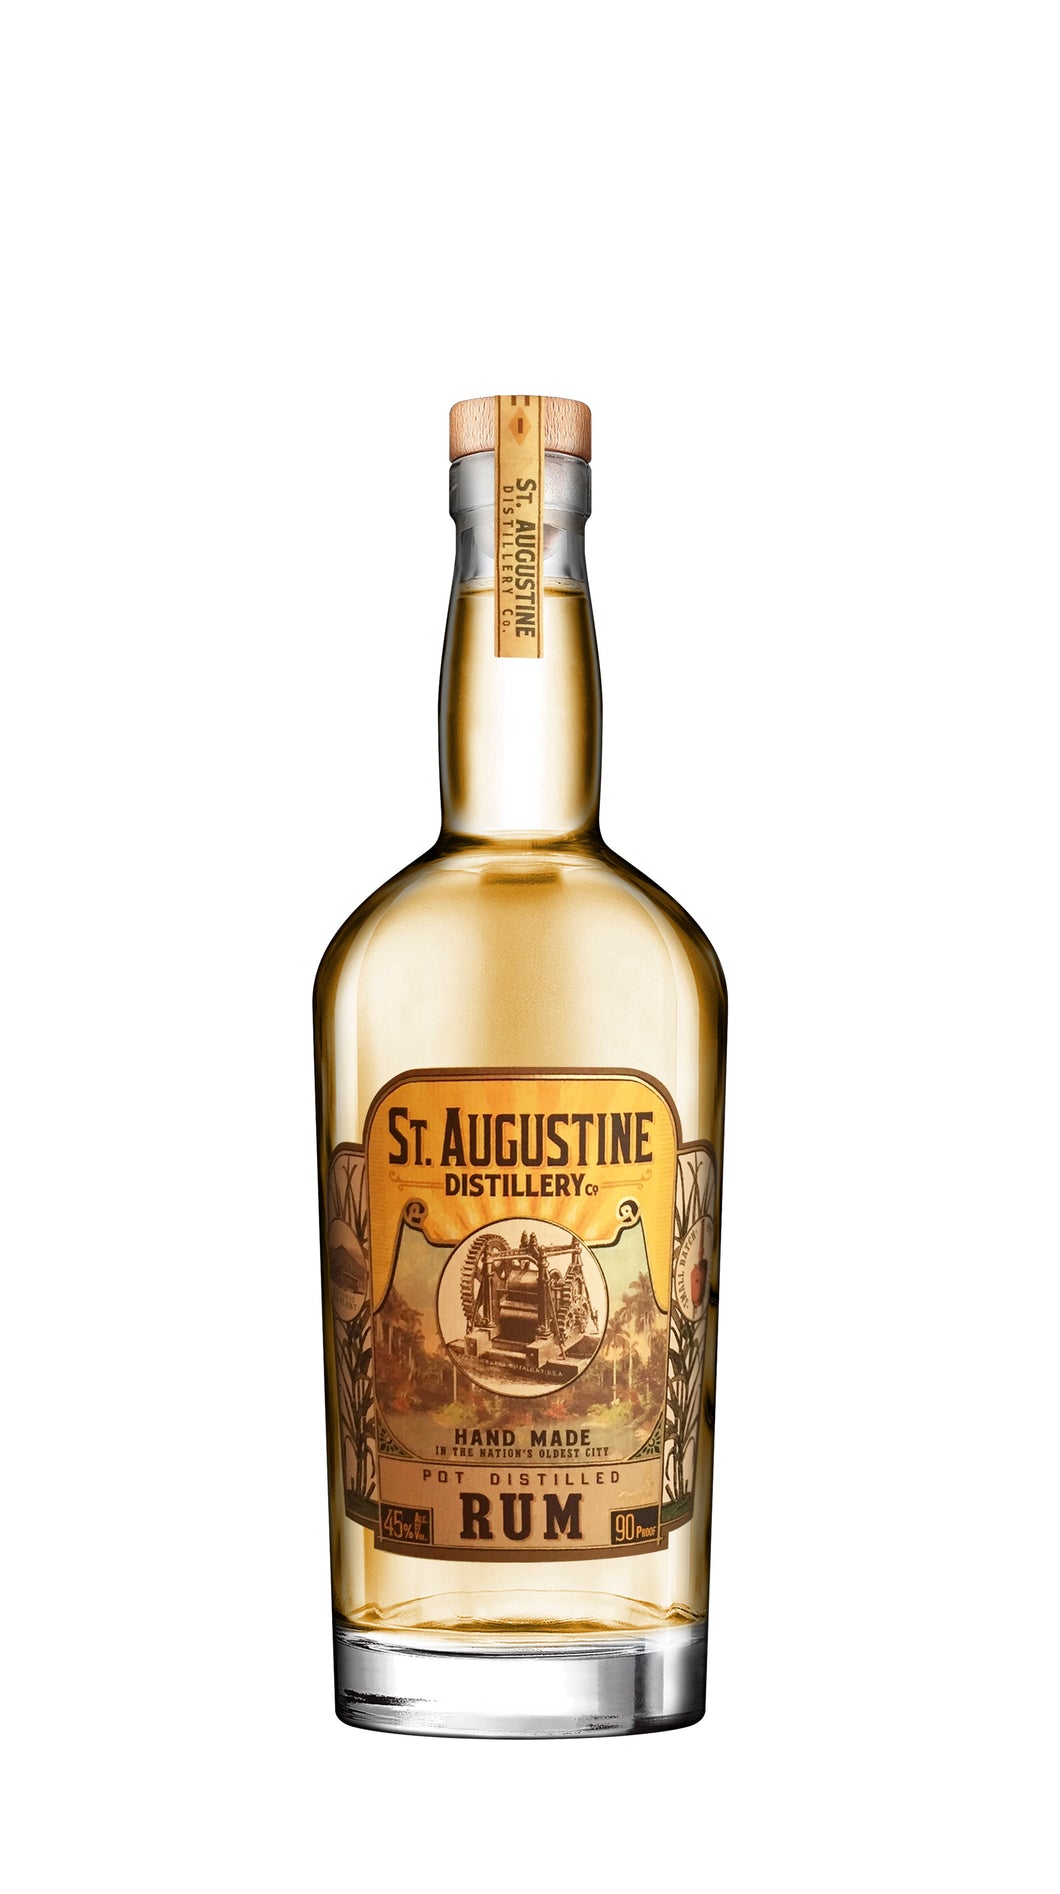 St Augustine Distillery Pot Distilled Rum